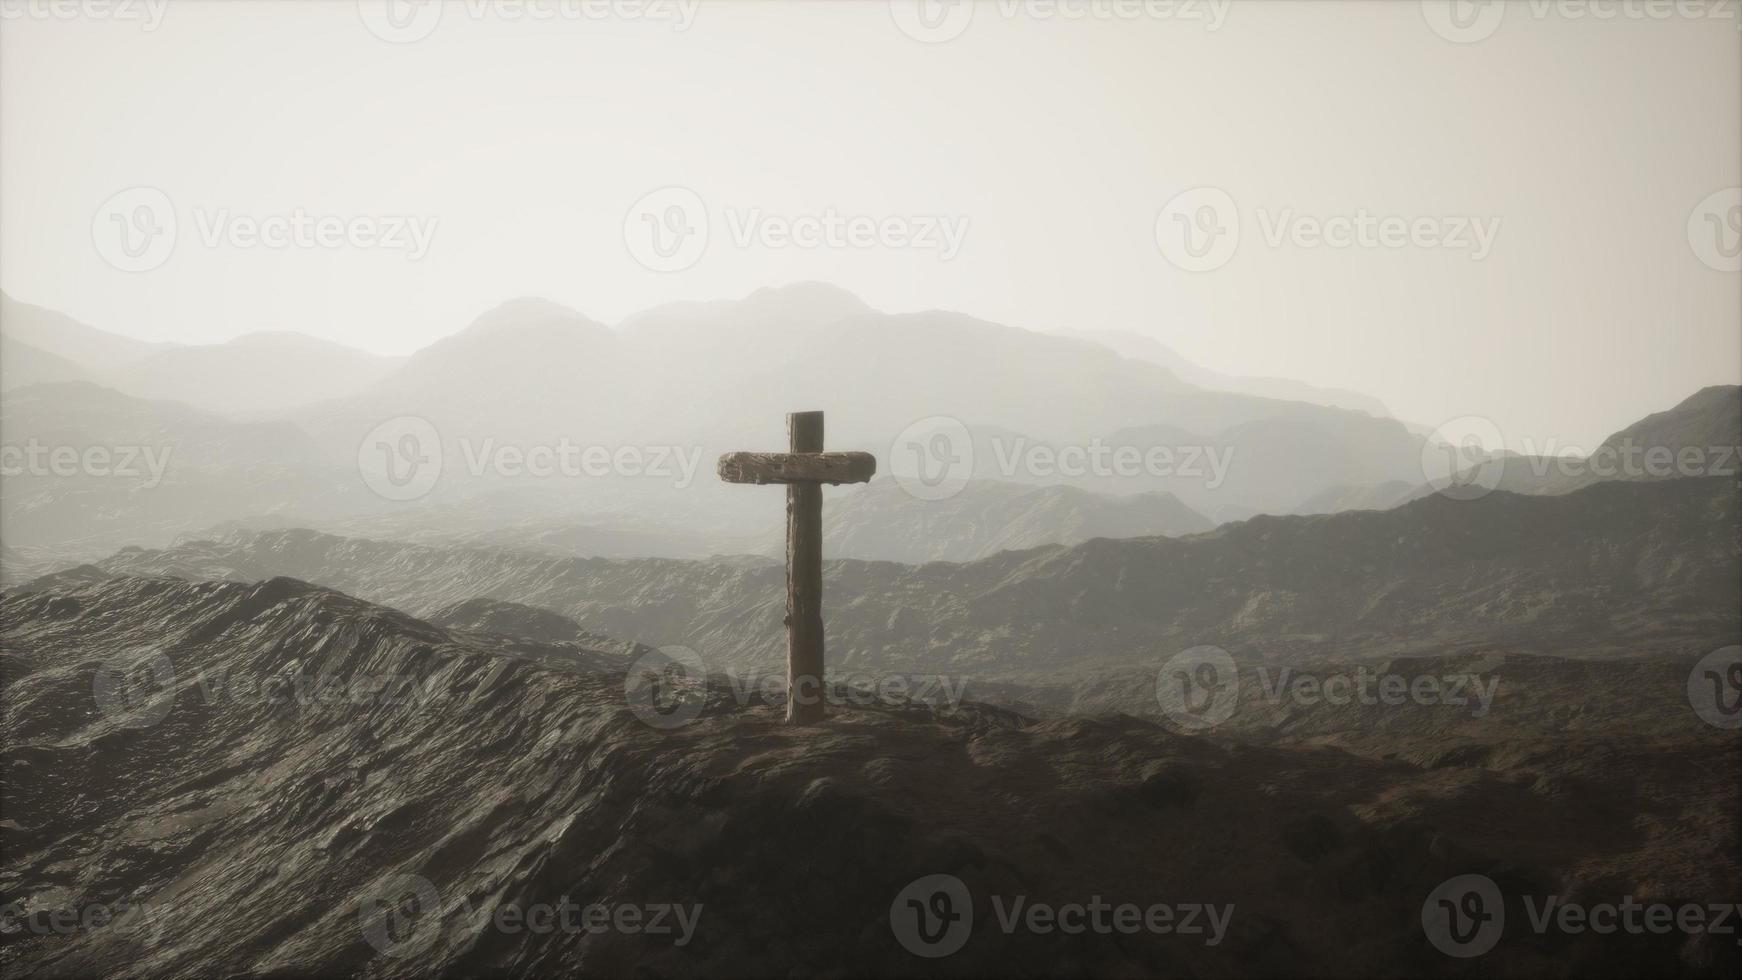 cruz de madeira crucifixo na montanha foto